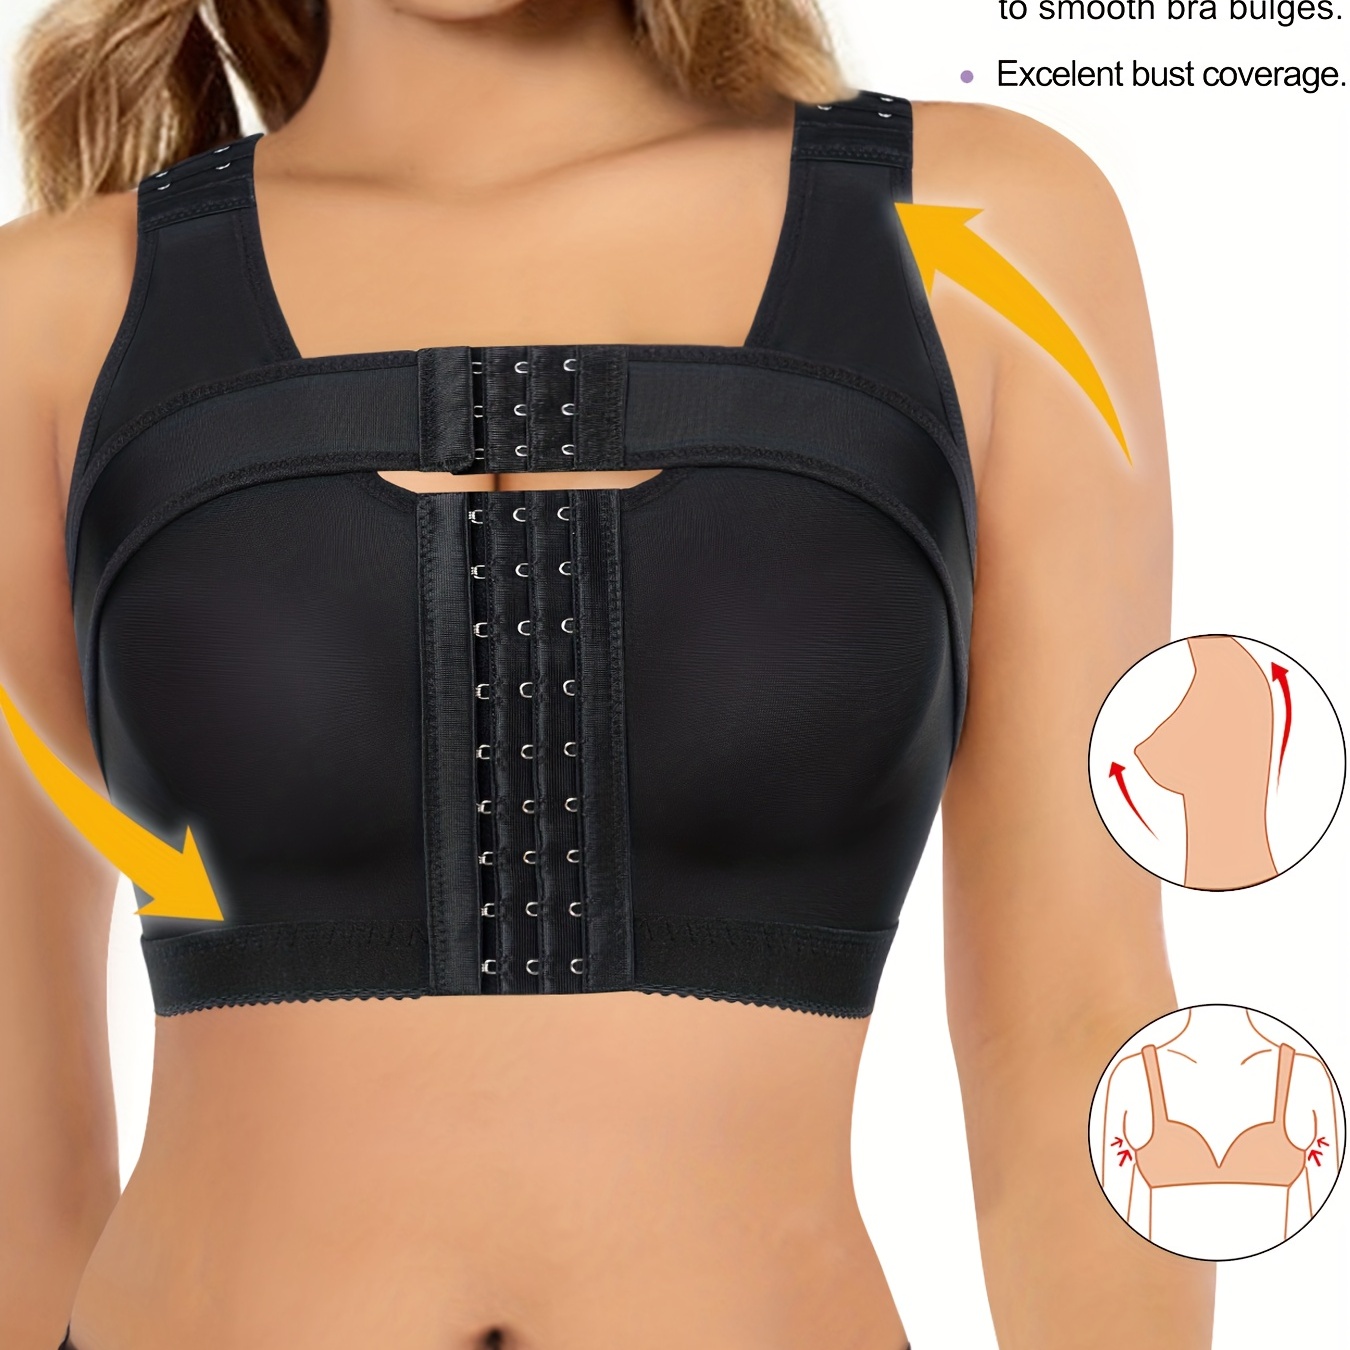 Post-Surgical Front Closure Bra, Adjustable Wide Strap Wireless Support  Bra, Women's Underwear & Lingerie